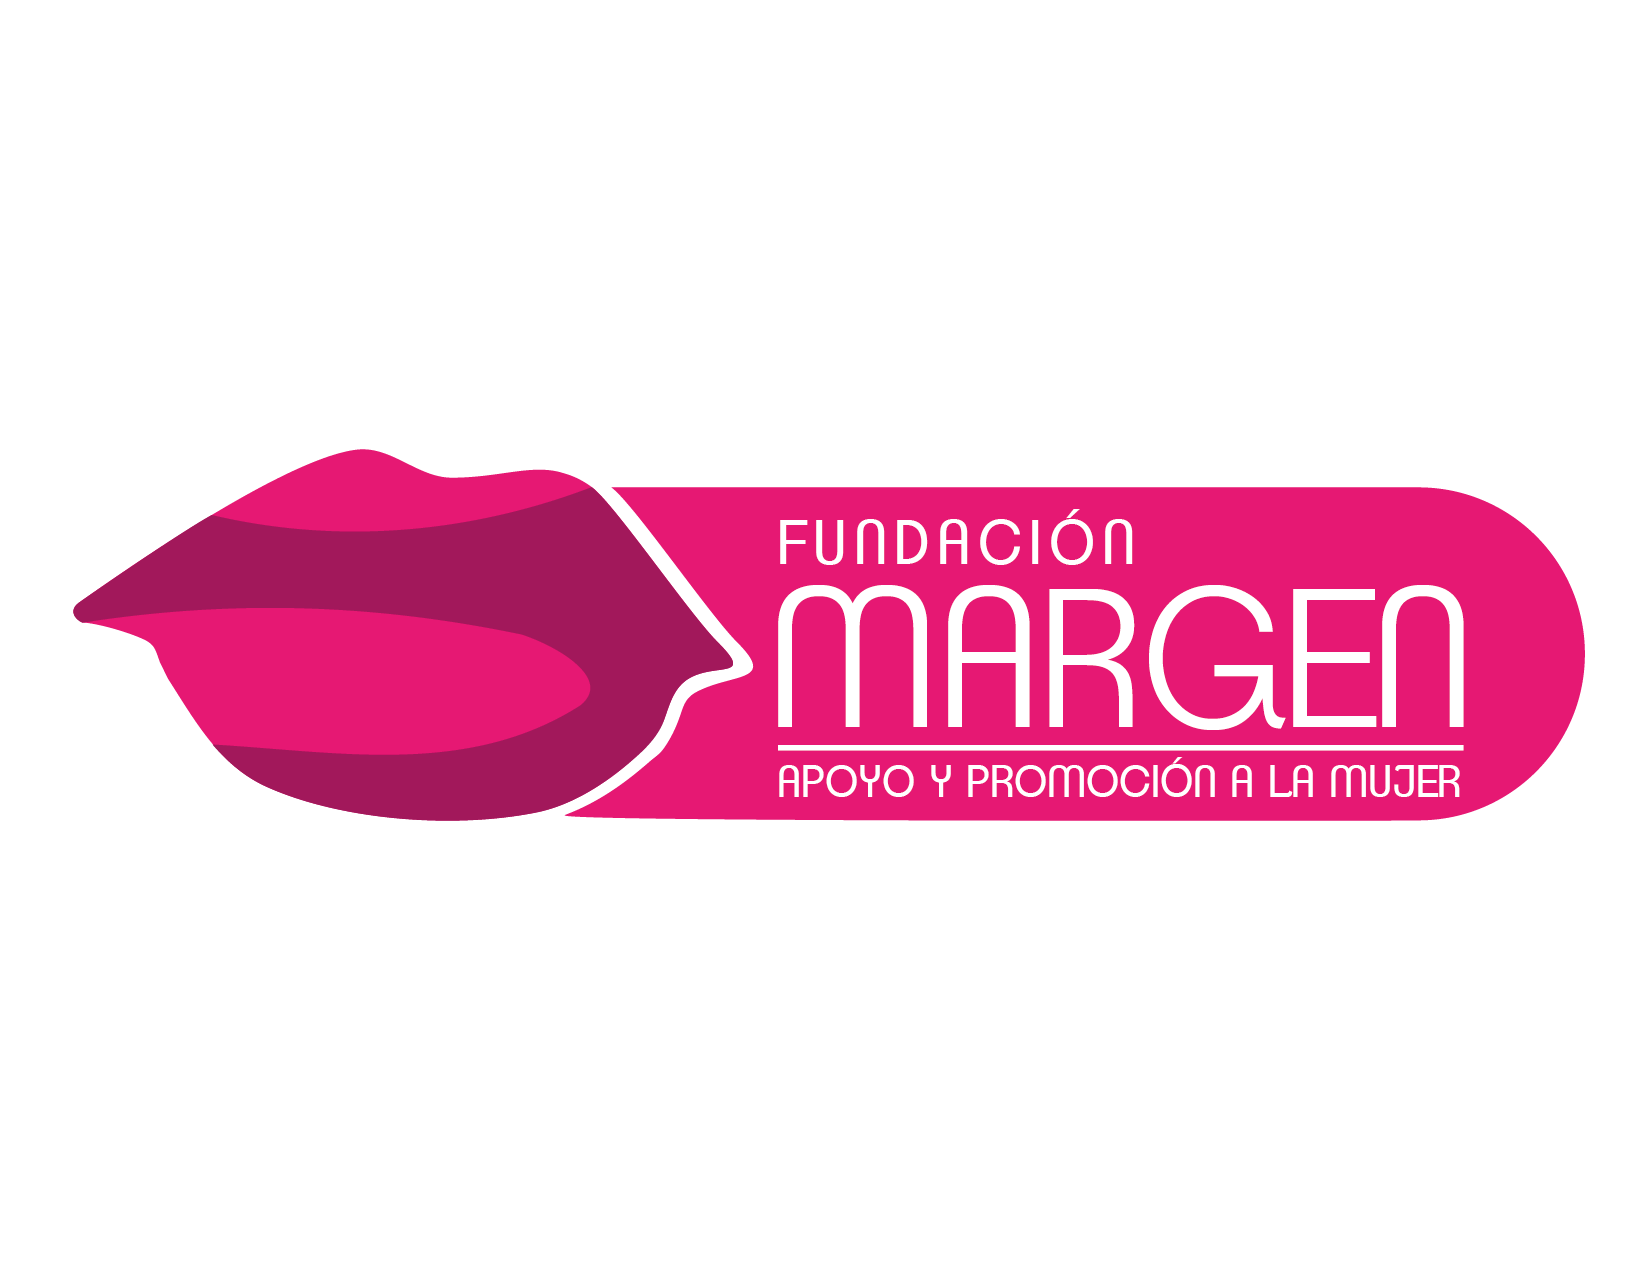 Fundación Margen de Apoyo y Promoción de la Mujer